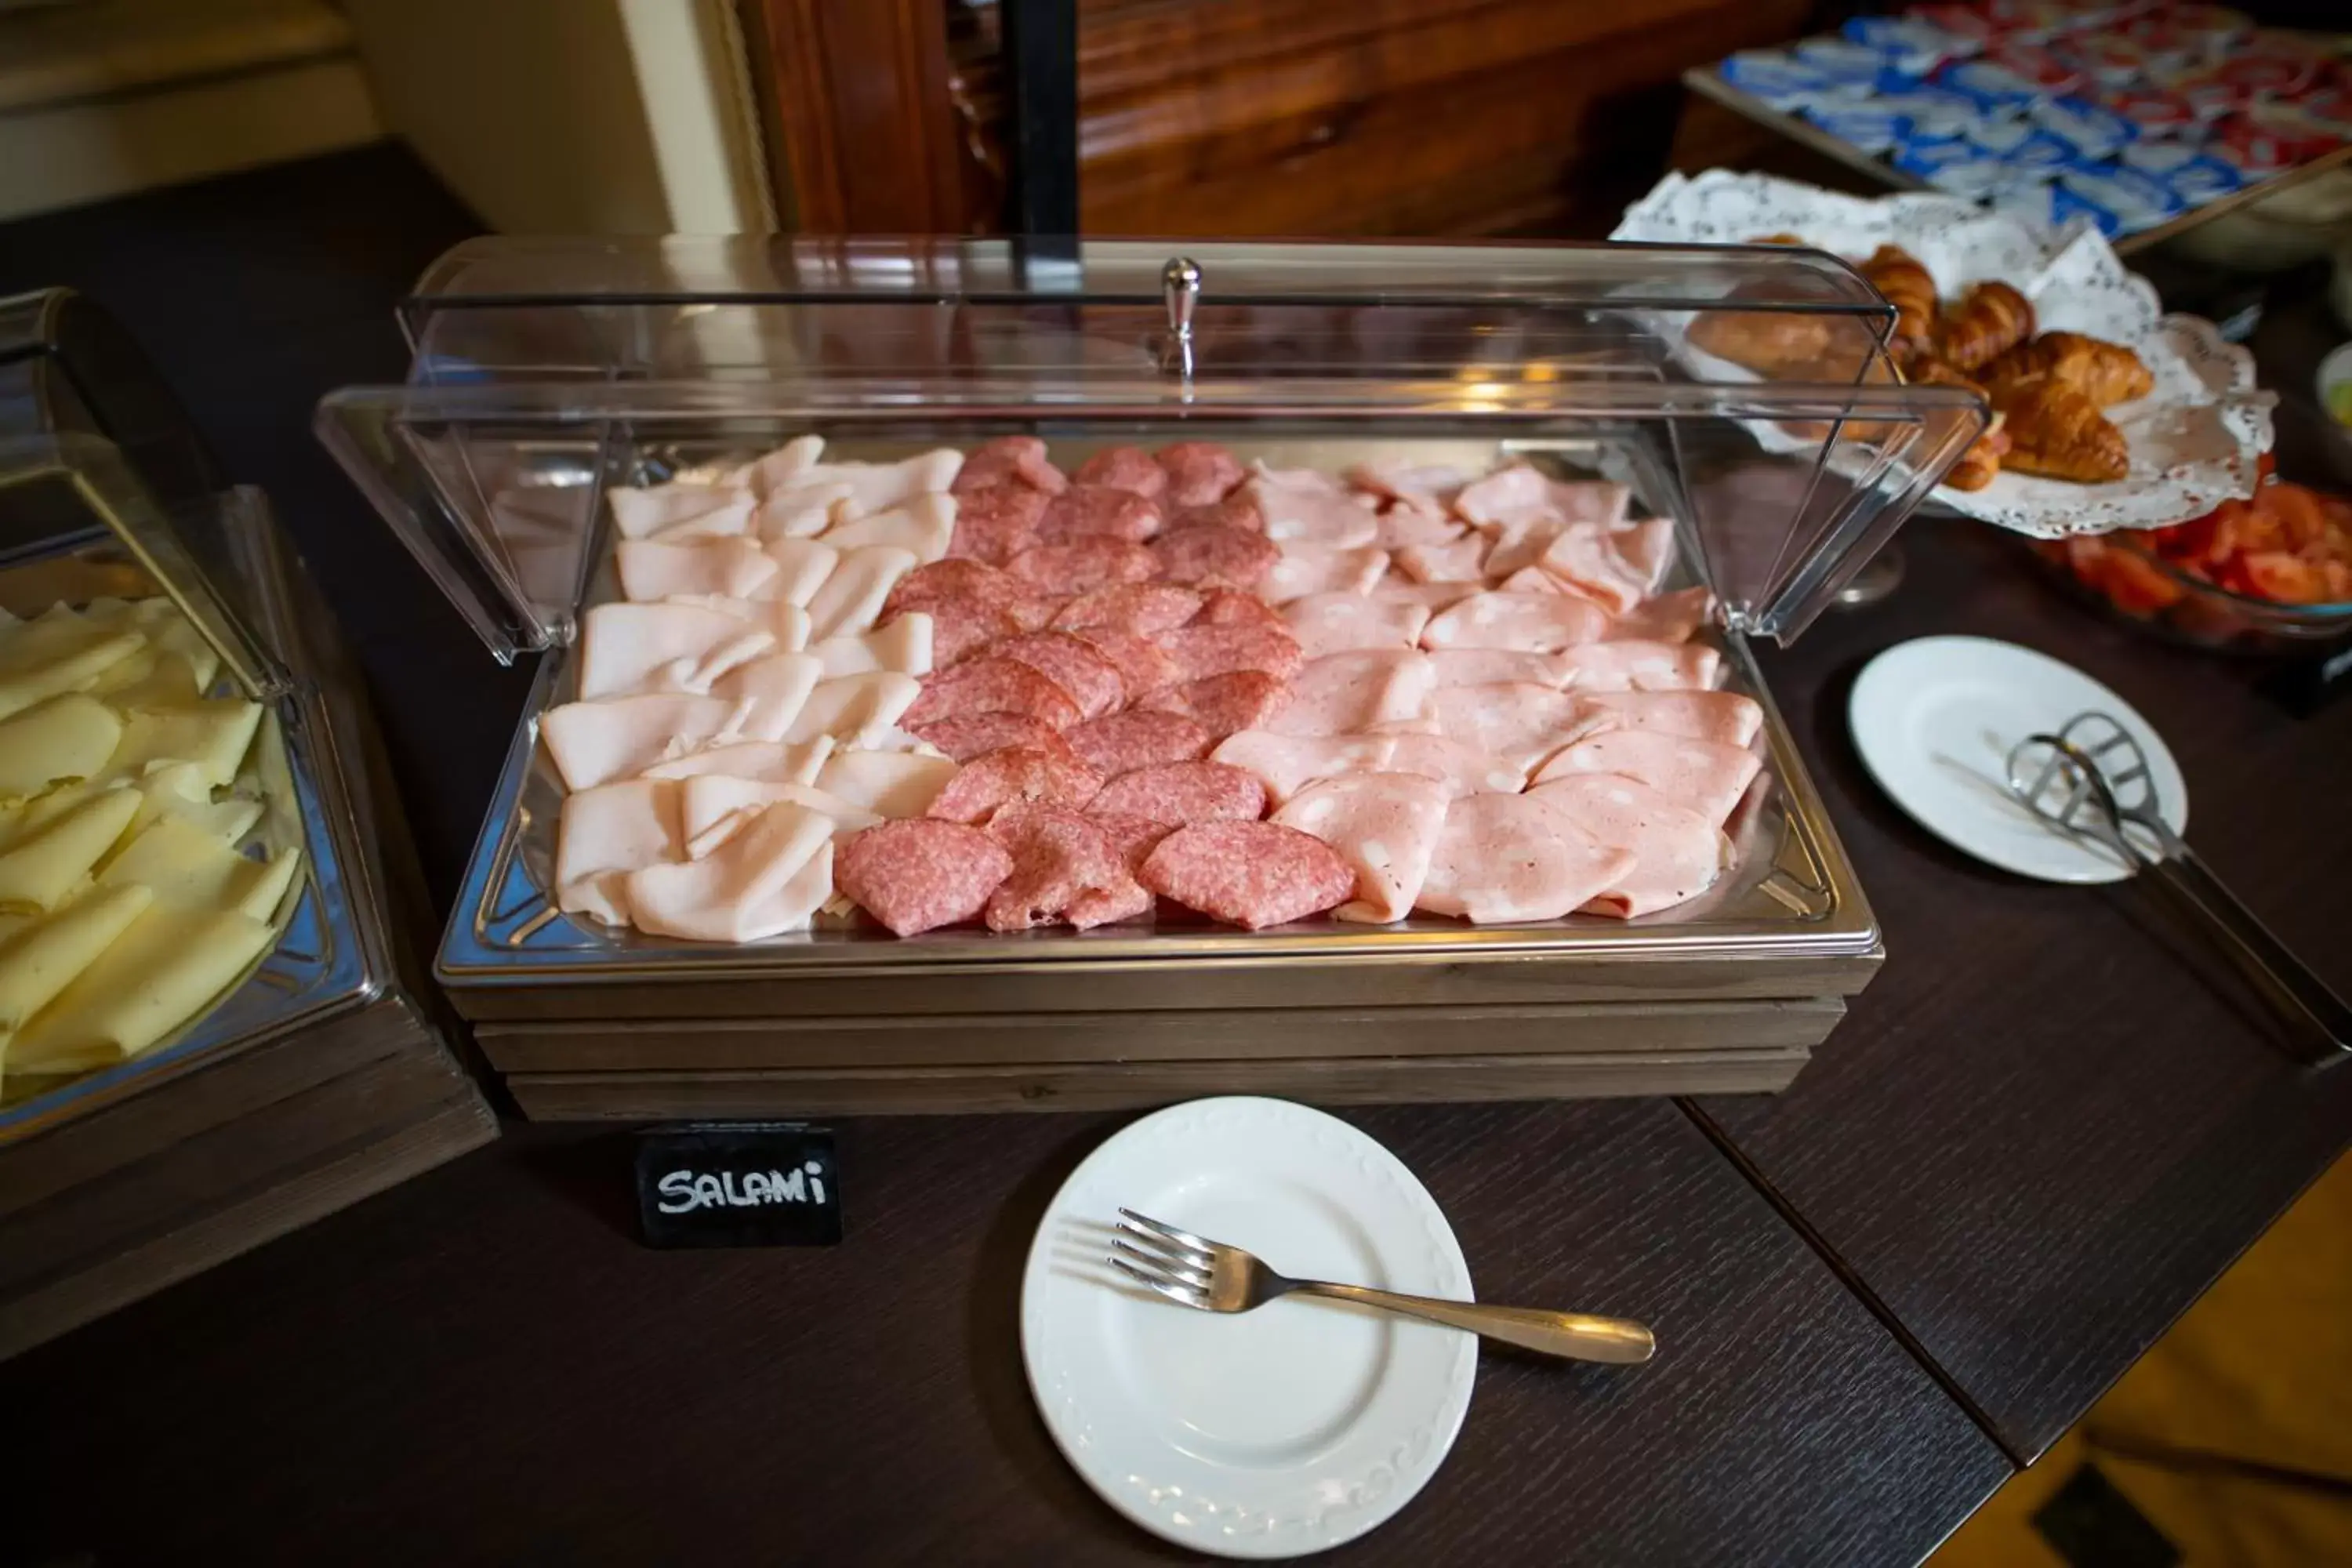 Buffet breakfast in LH Hotel Andreotti